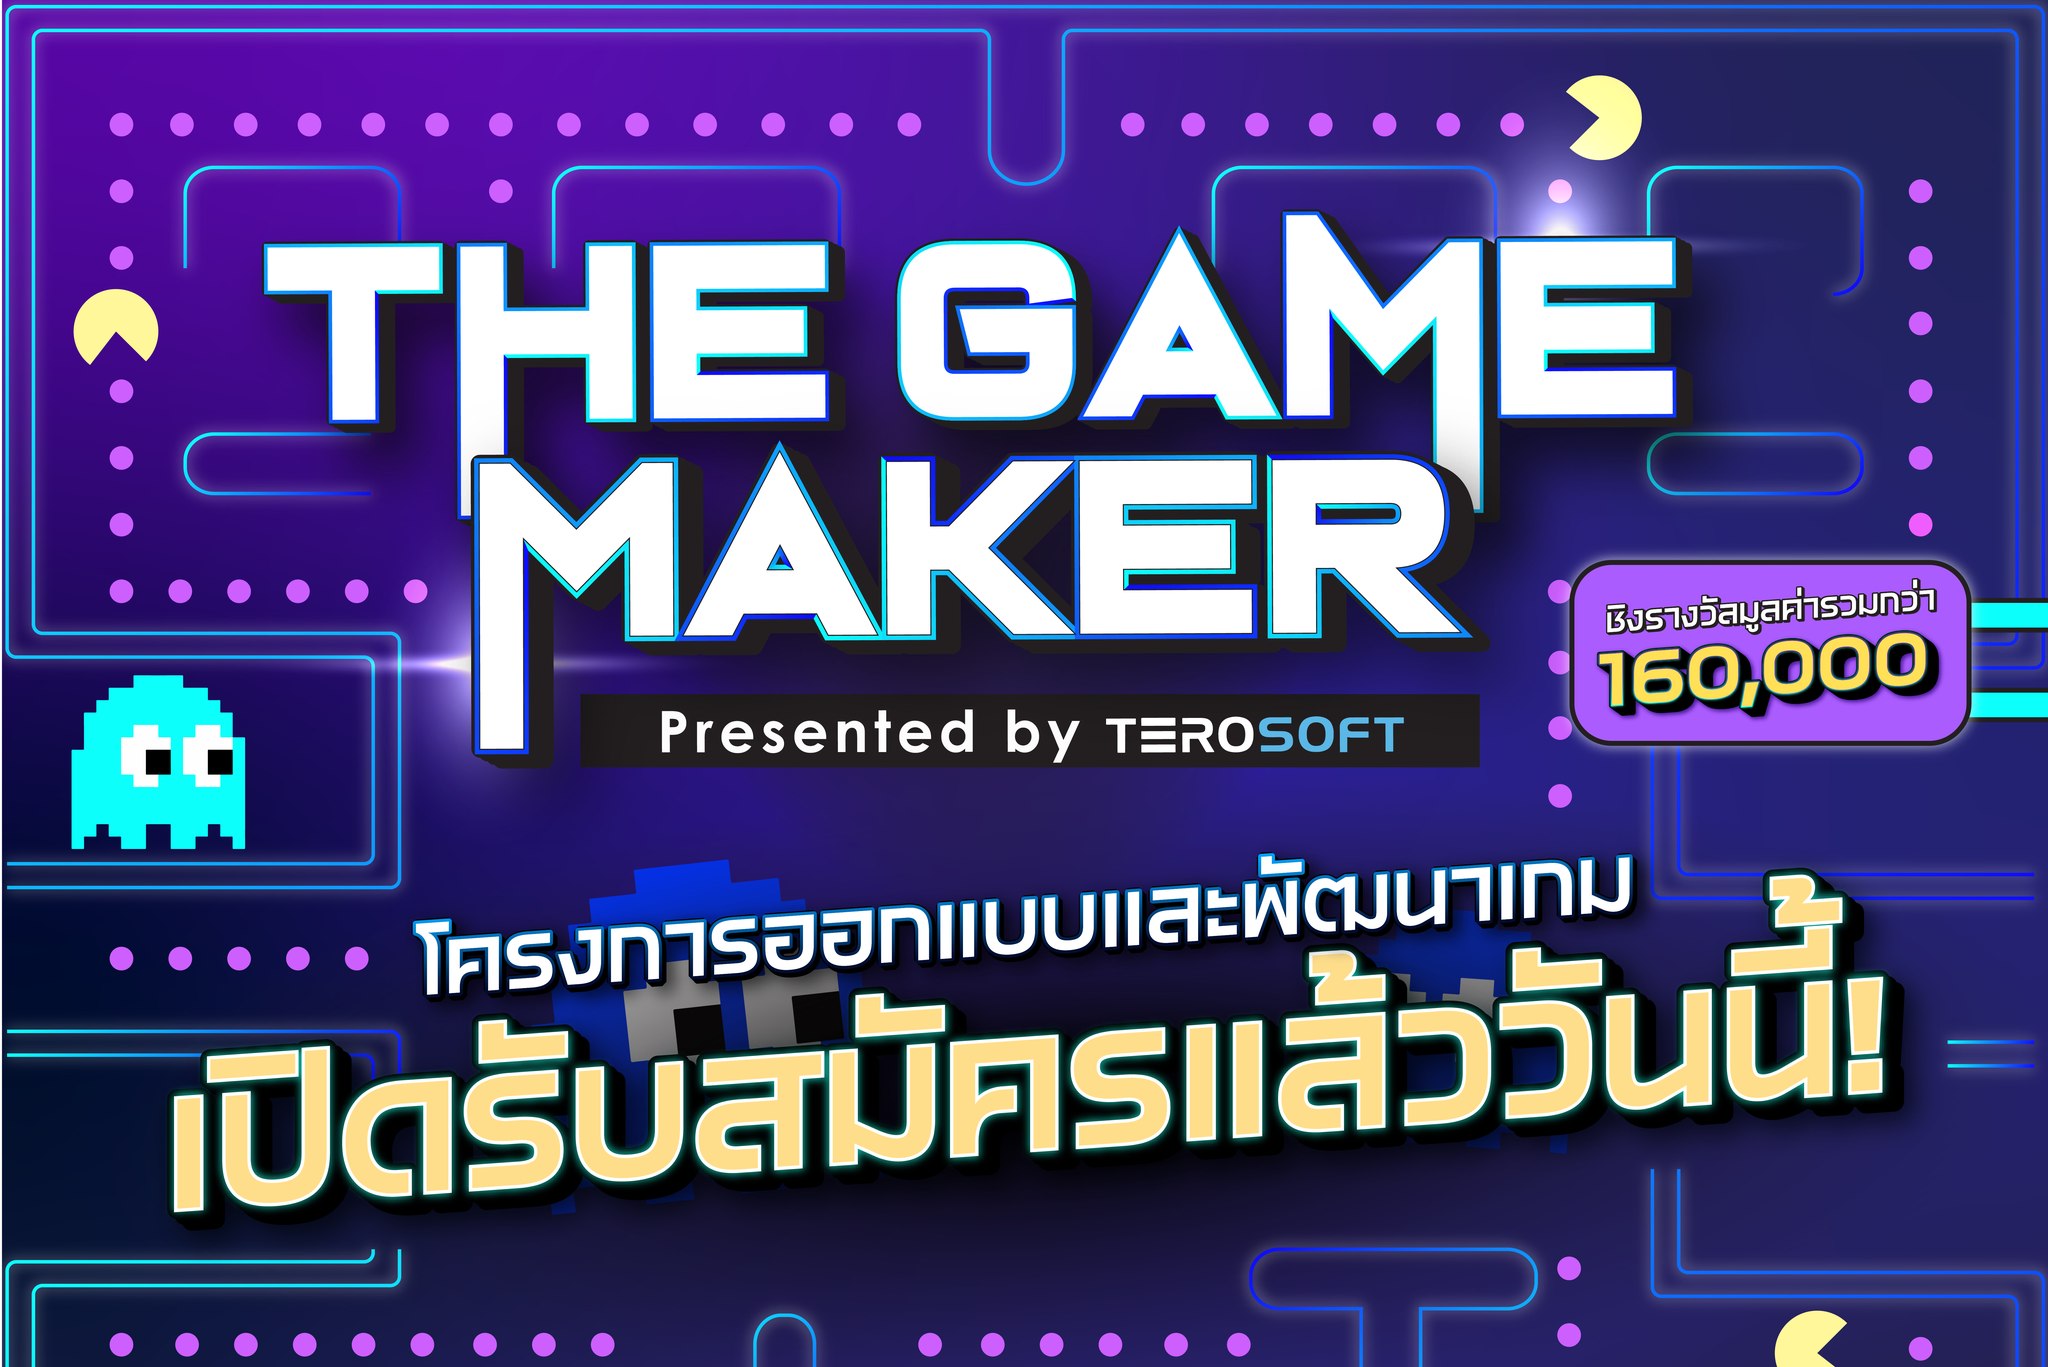 The Game Maker รับสมัครนักพัฒนาเกมหน้าใหม่ โชว์ผลงาน สานฝันให้เป็นจริง ชิงรางวัลรวม 160,00 บาท